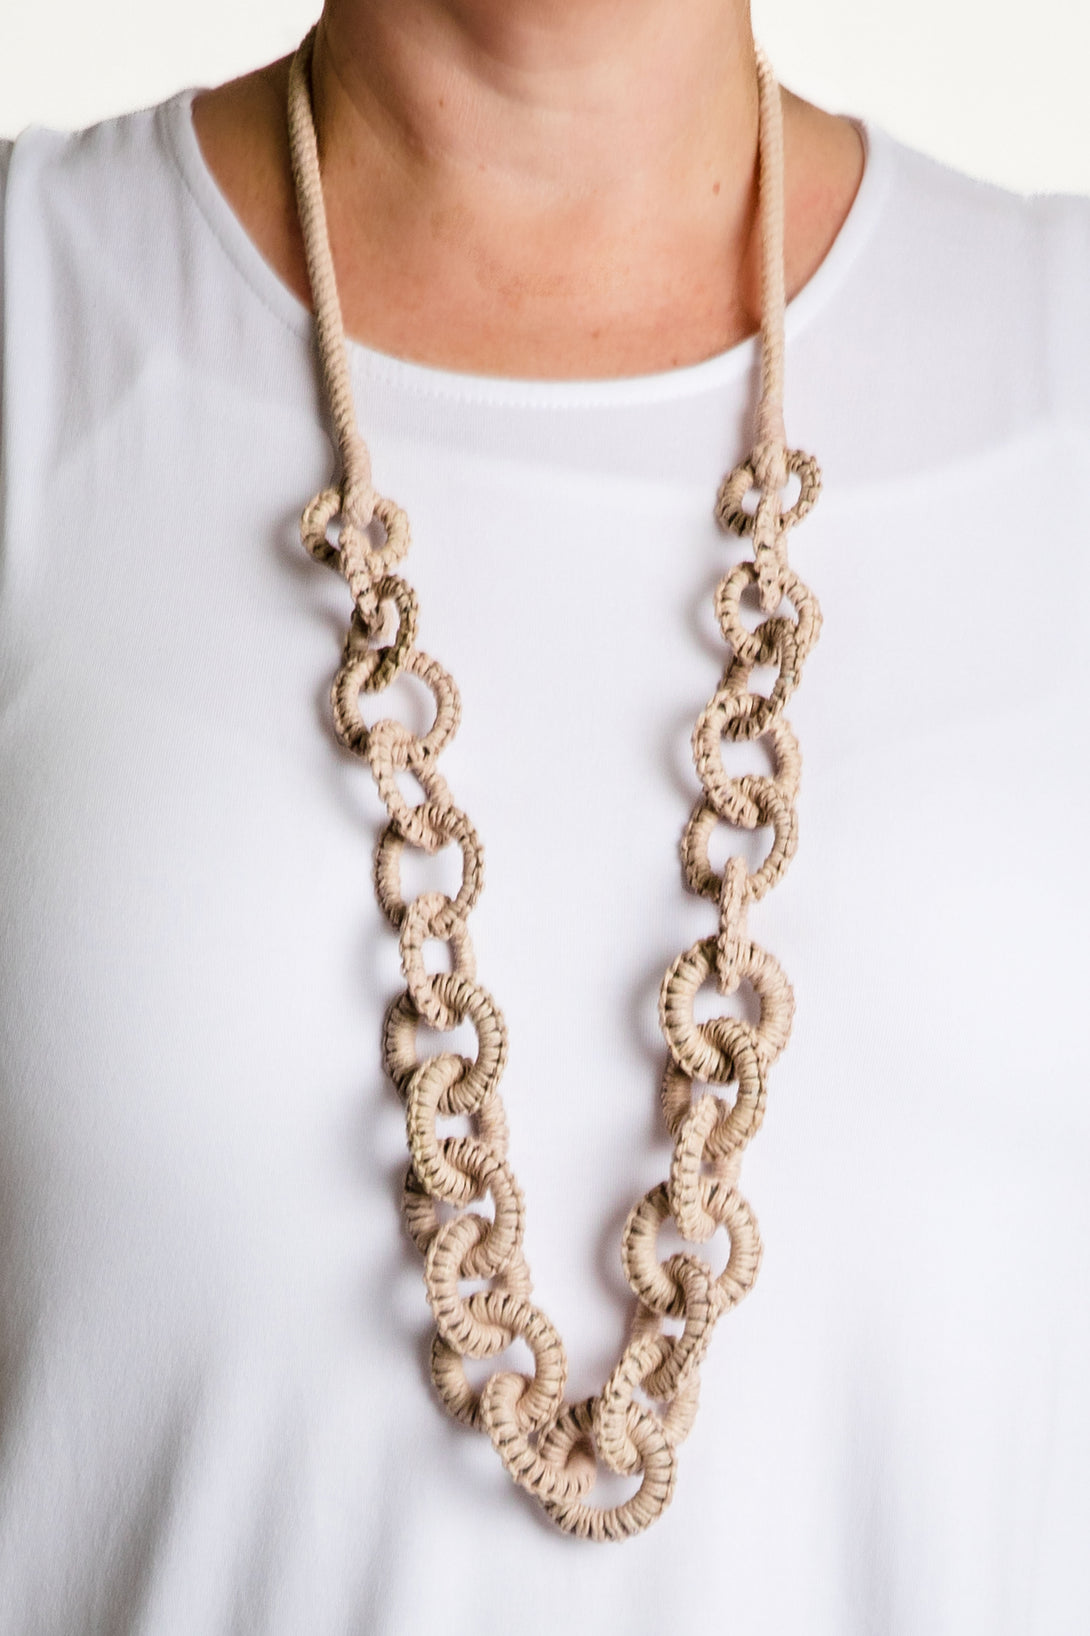 Dorit Necklace - Imagine Fashion